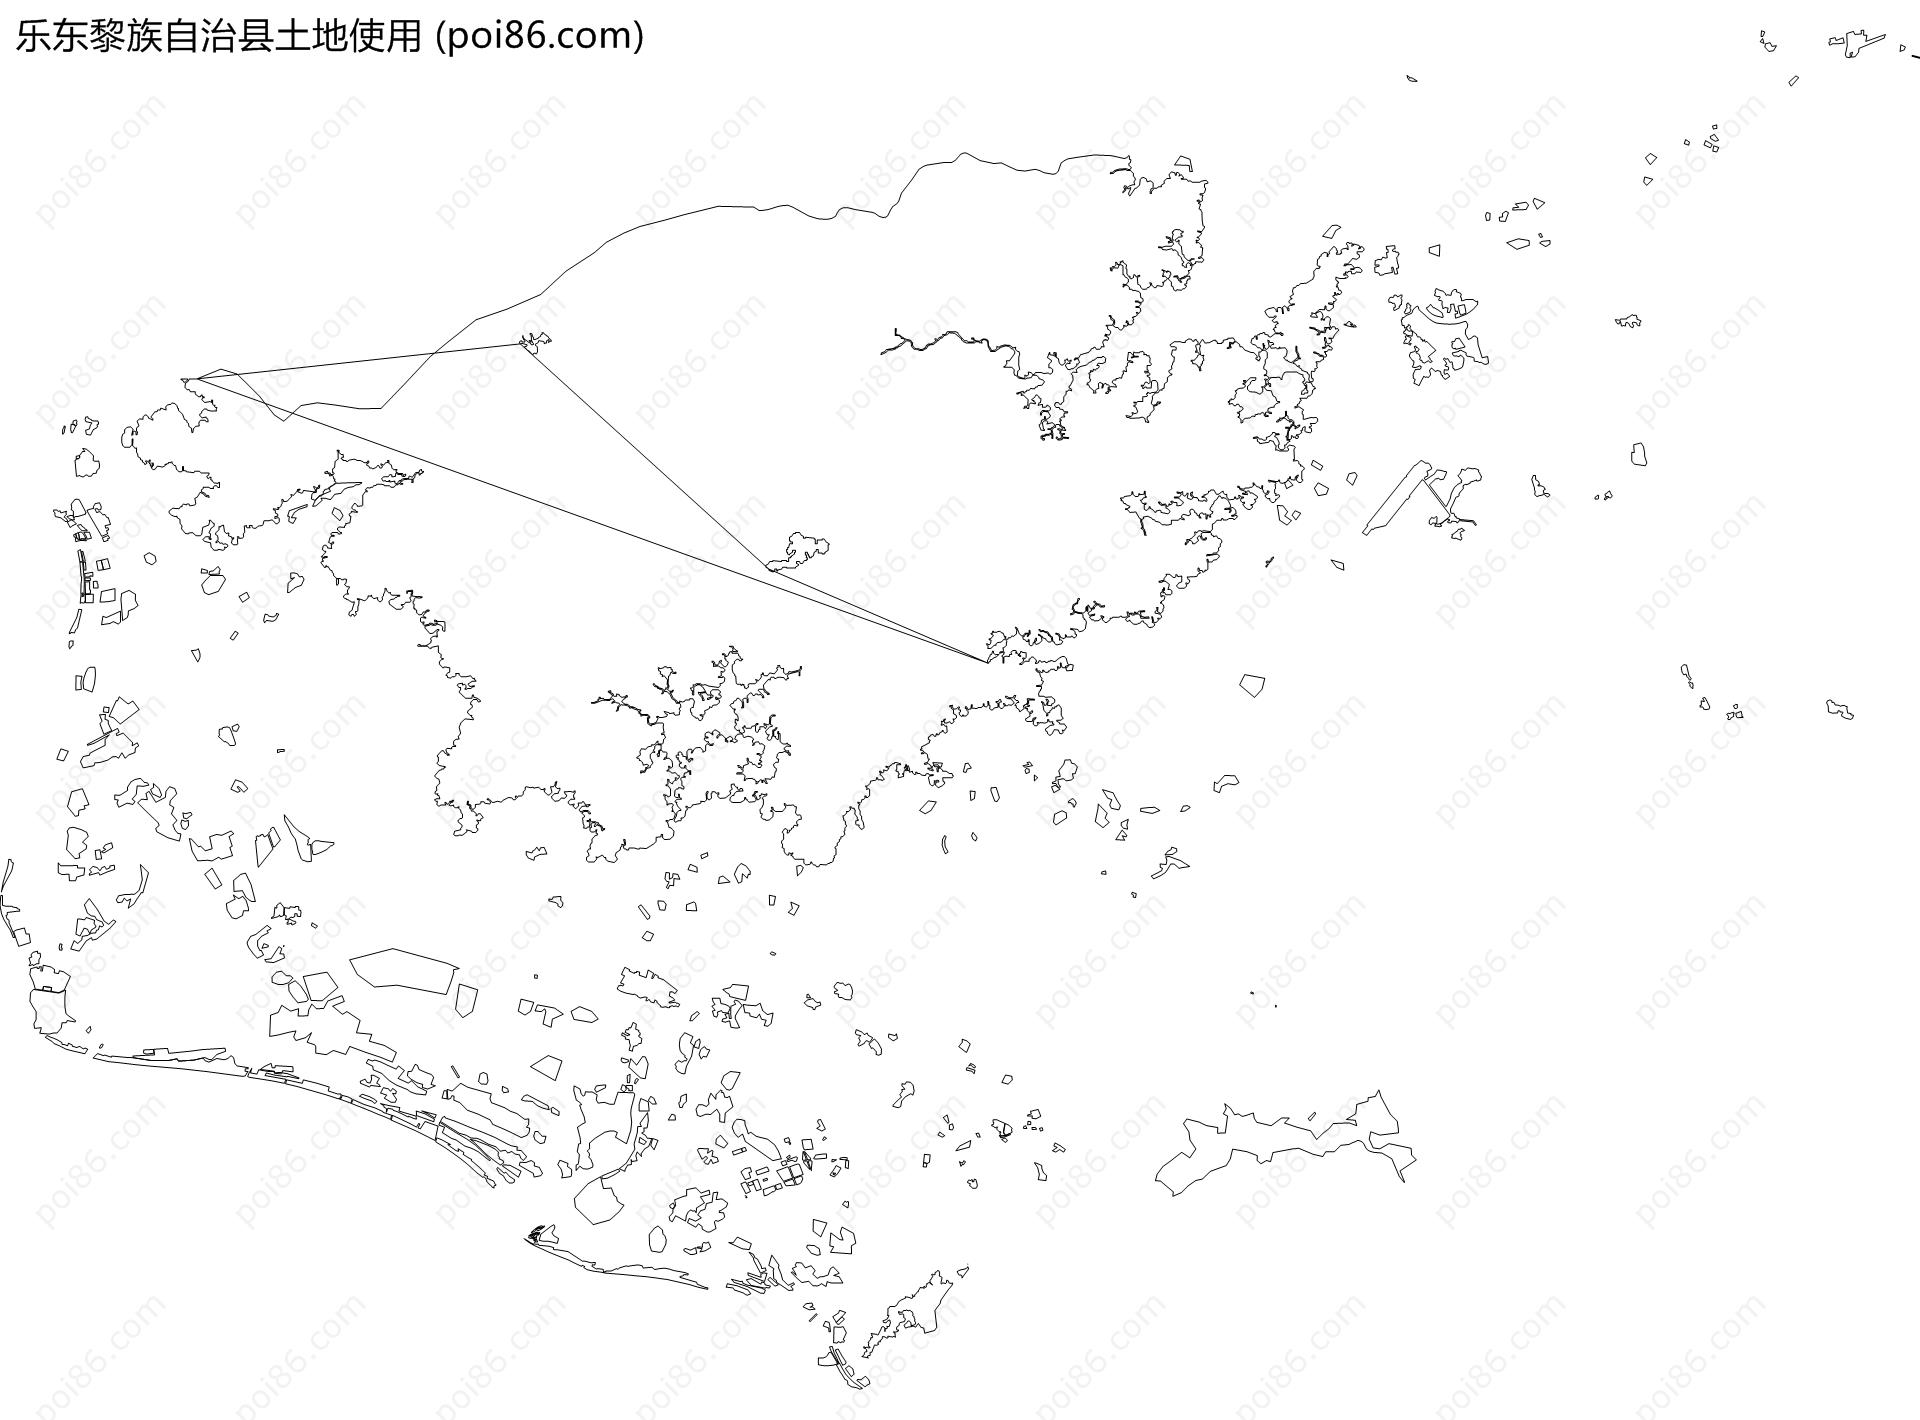 乐东黎族自治县土地使用地图